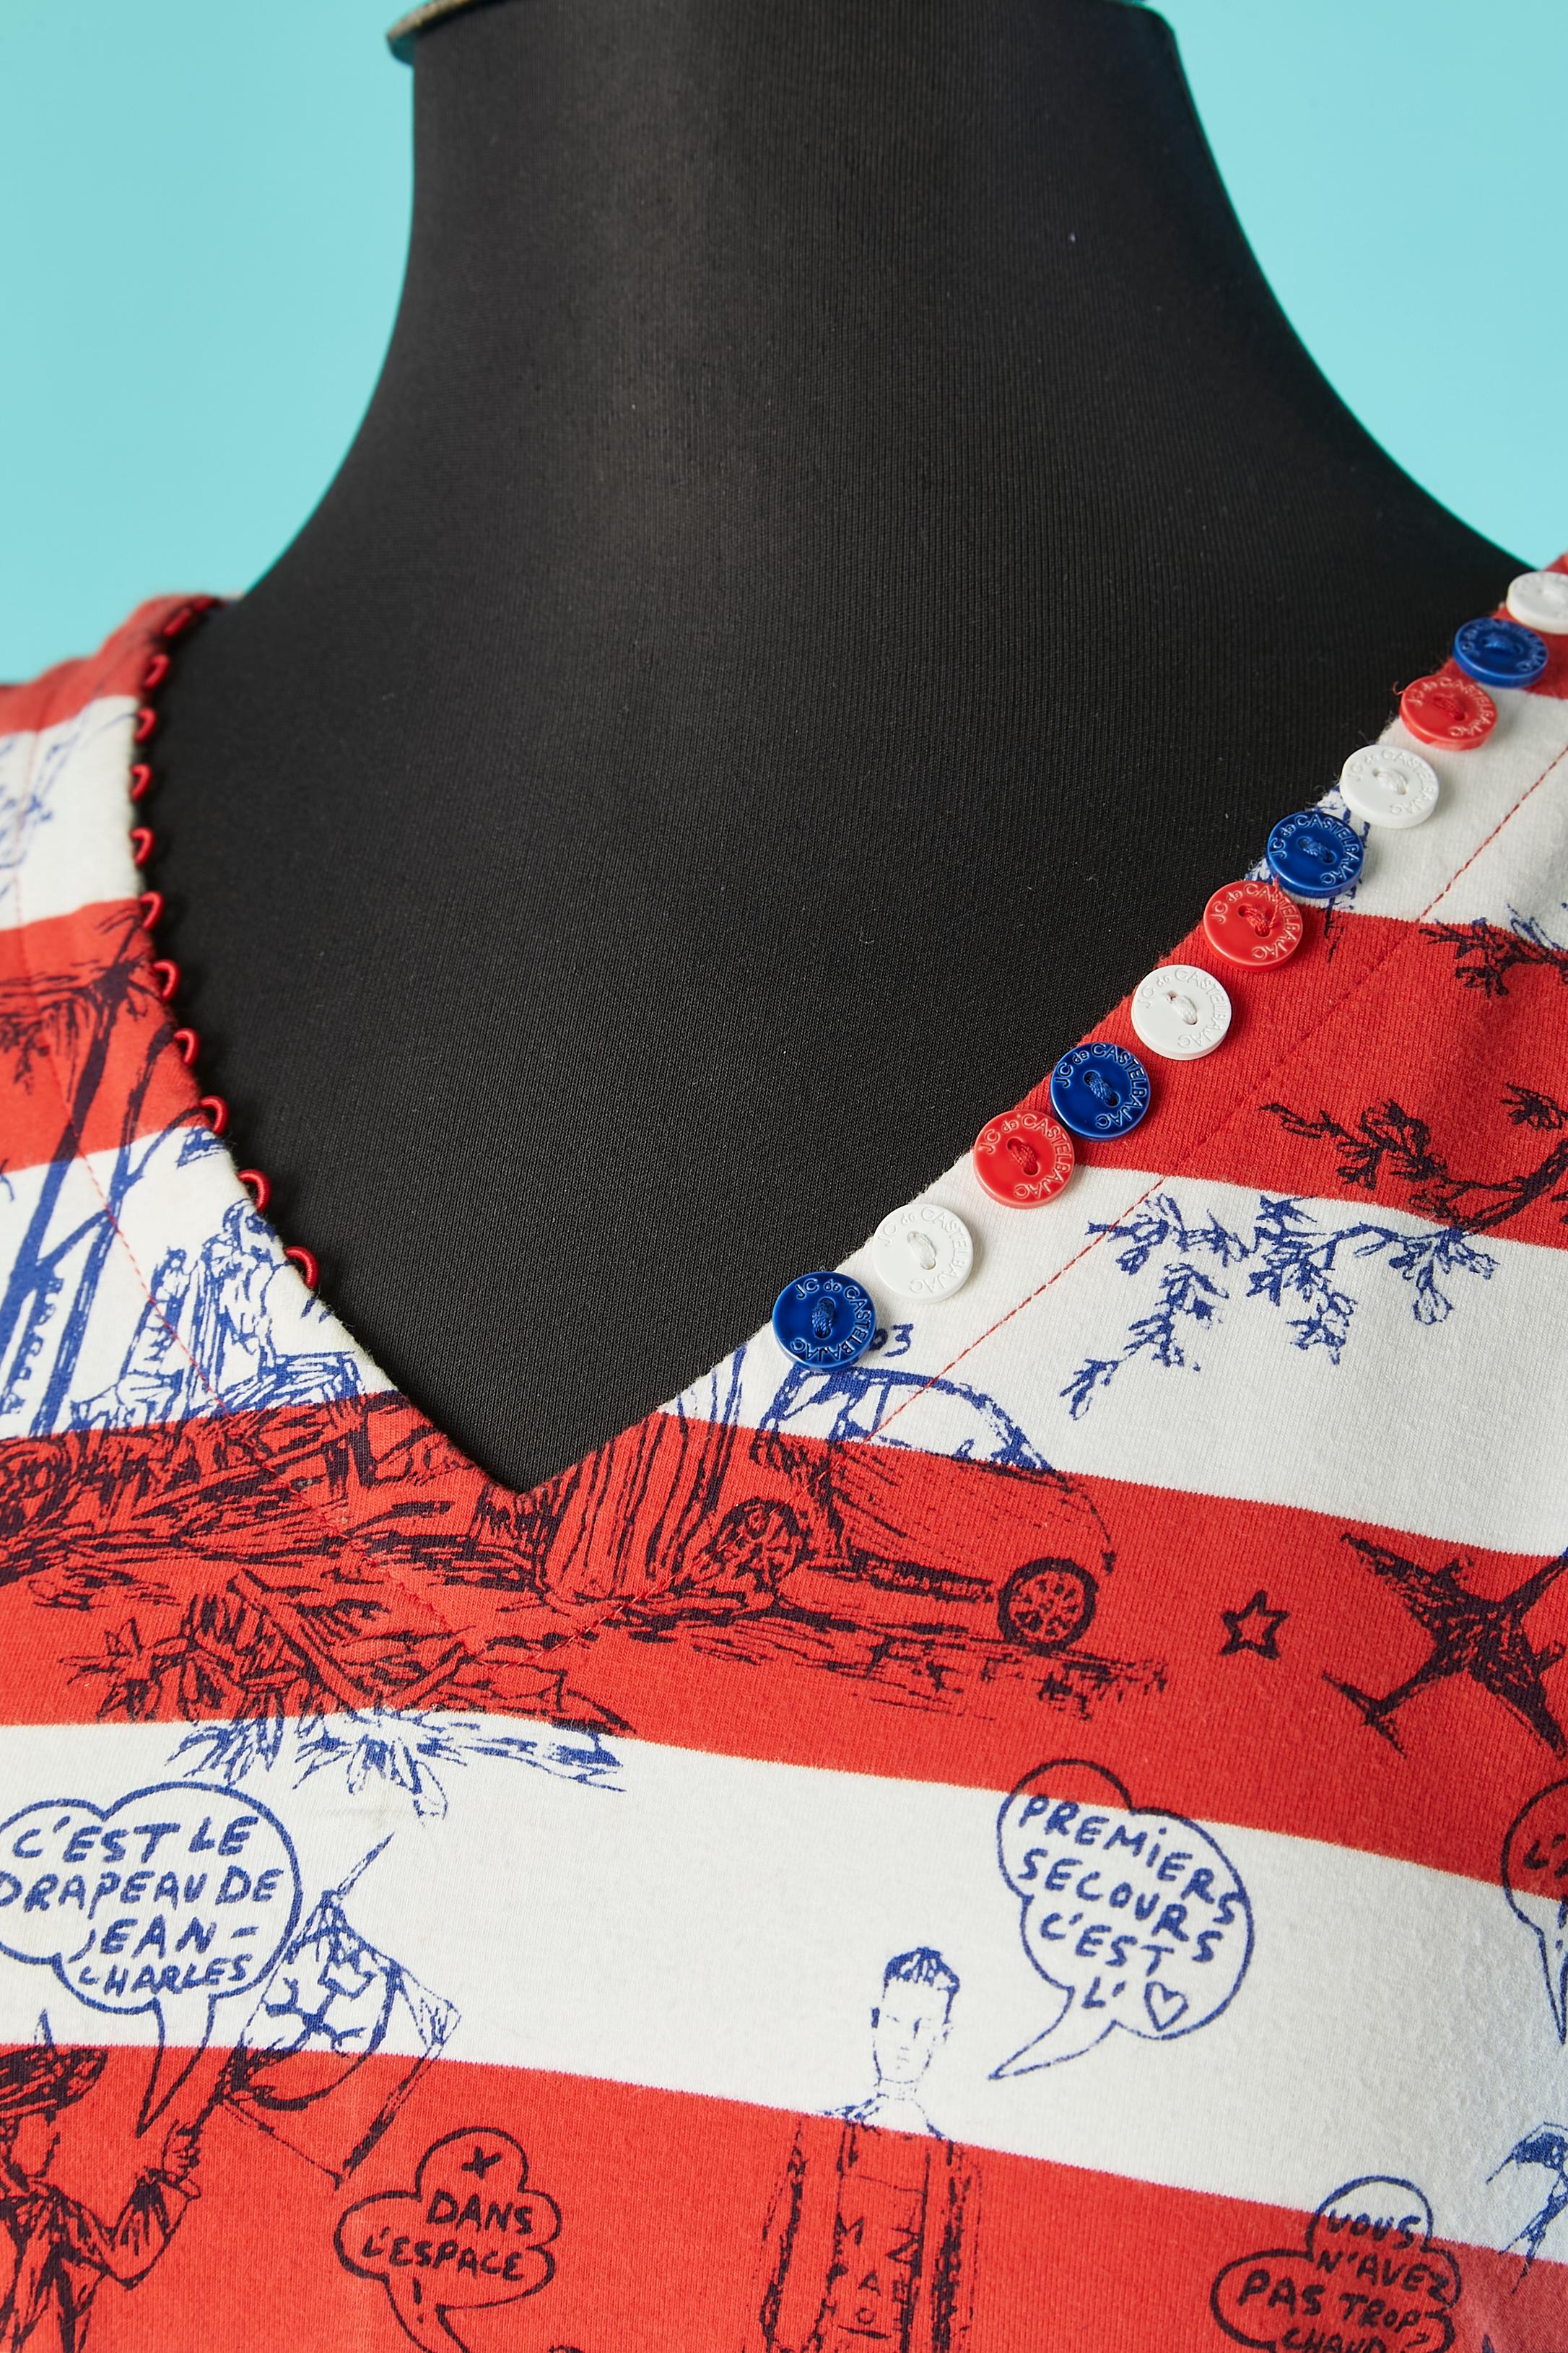 Ärmelloses Jersey-Baumwollkleid mit Zeichnung und französischem Flaggengürtel mit silberner Metallschnalle und Öse. 
Marken-Zierknöpfe und Knopfloch am Halsausschnitt und Markenknopfverschluss in der oberen Rückenmitte. 
GRÖSSE M 